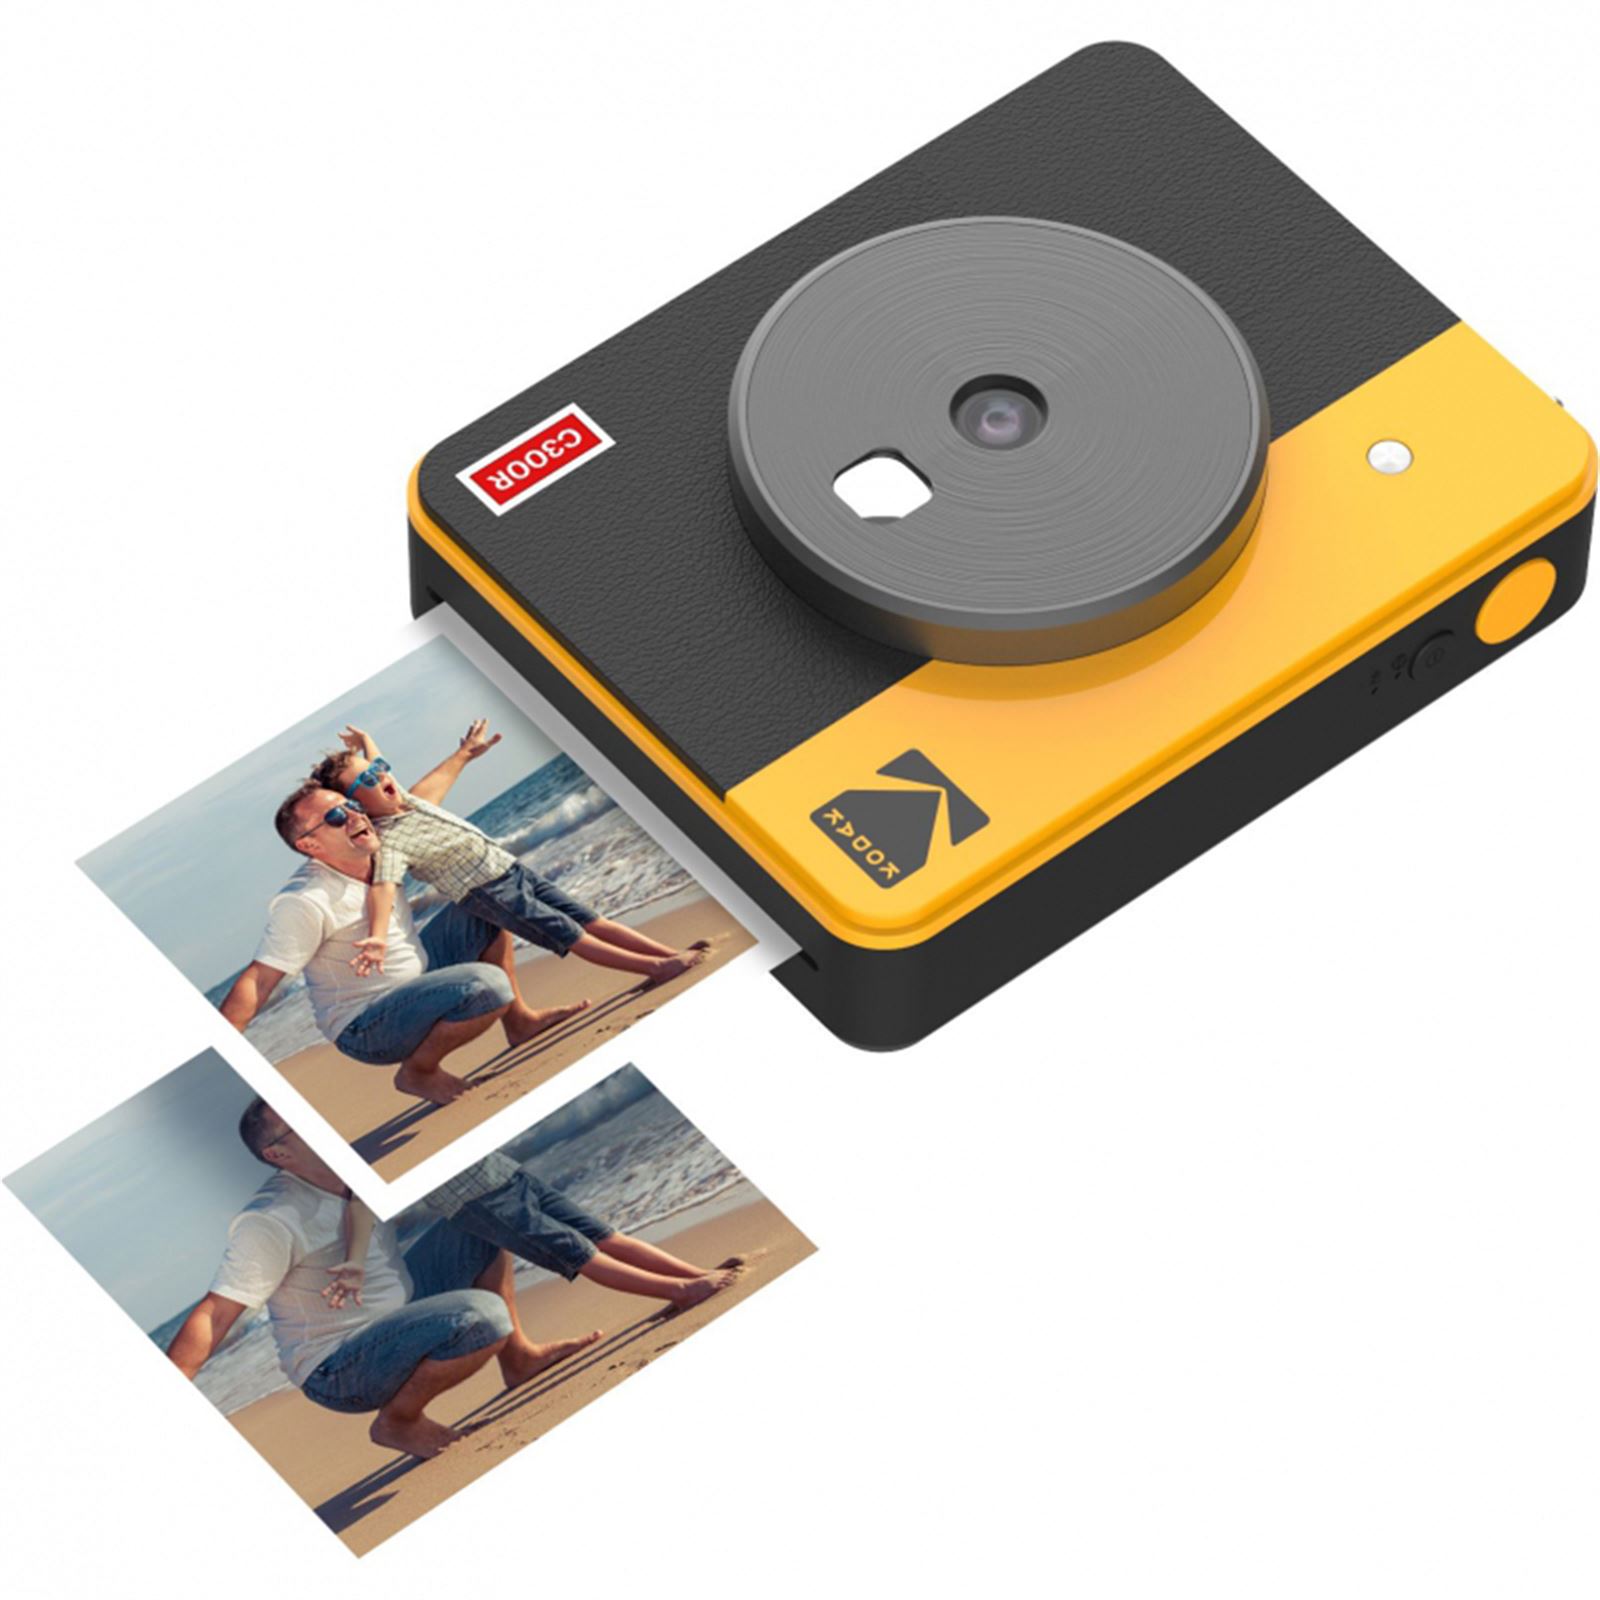 Kodak Mini Shot Combo 3 Retro/C300R - Anında Baskı Dijital Fotoğraf Makinesi Sarı (ICRG-330 Hediyeli)